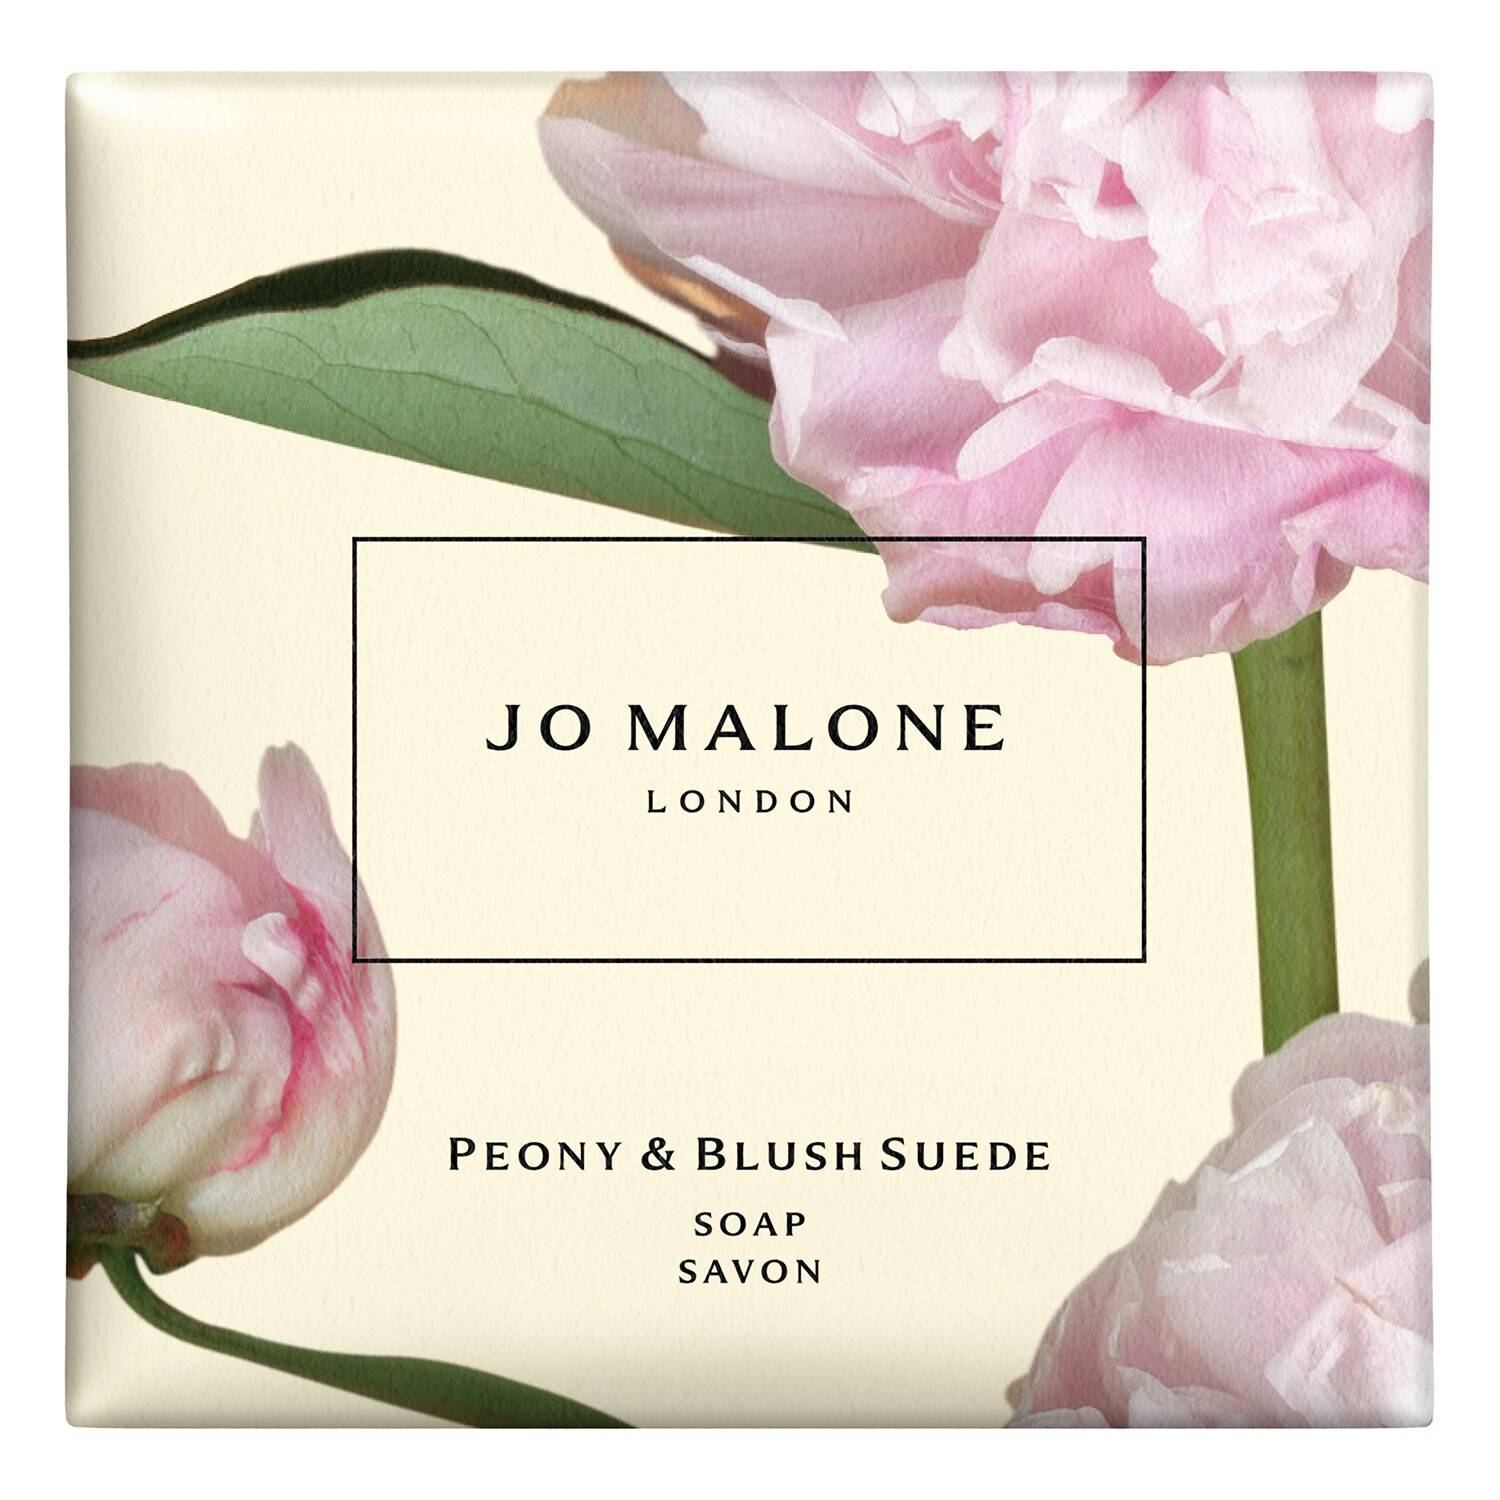 Jo Malone London Peony & Blush Suede Soap 100G